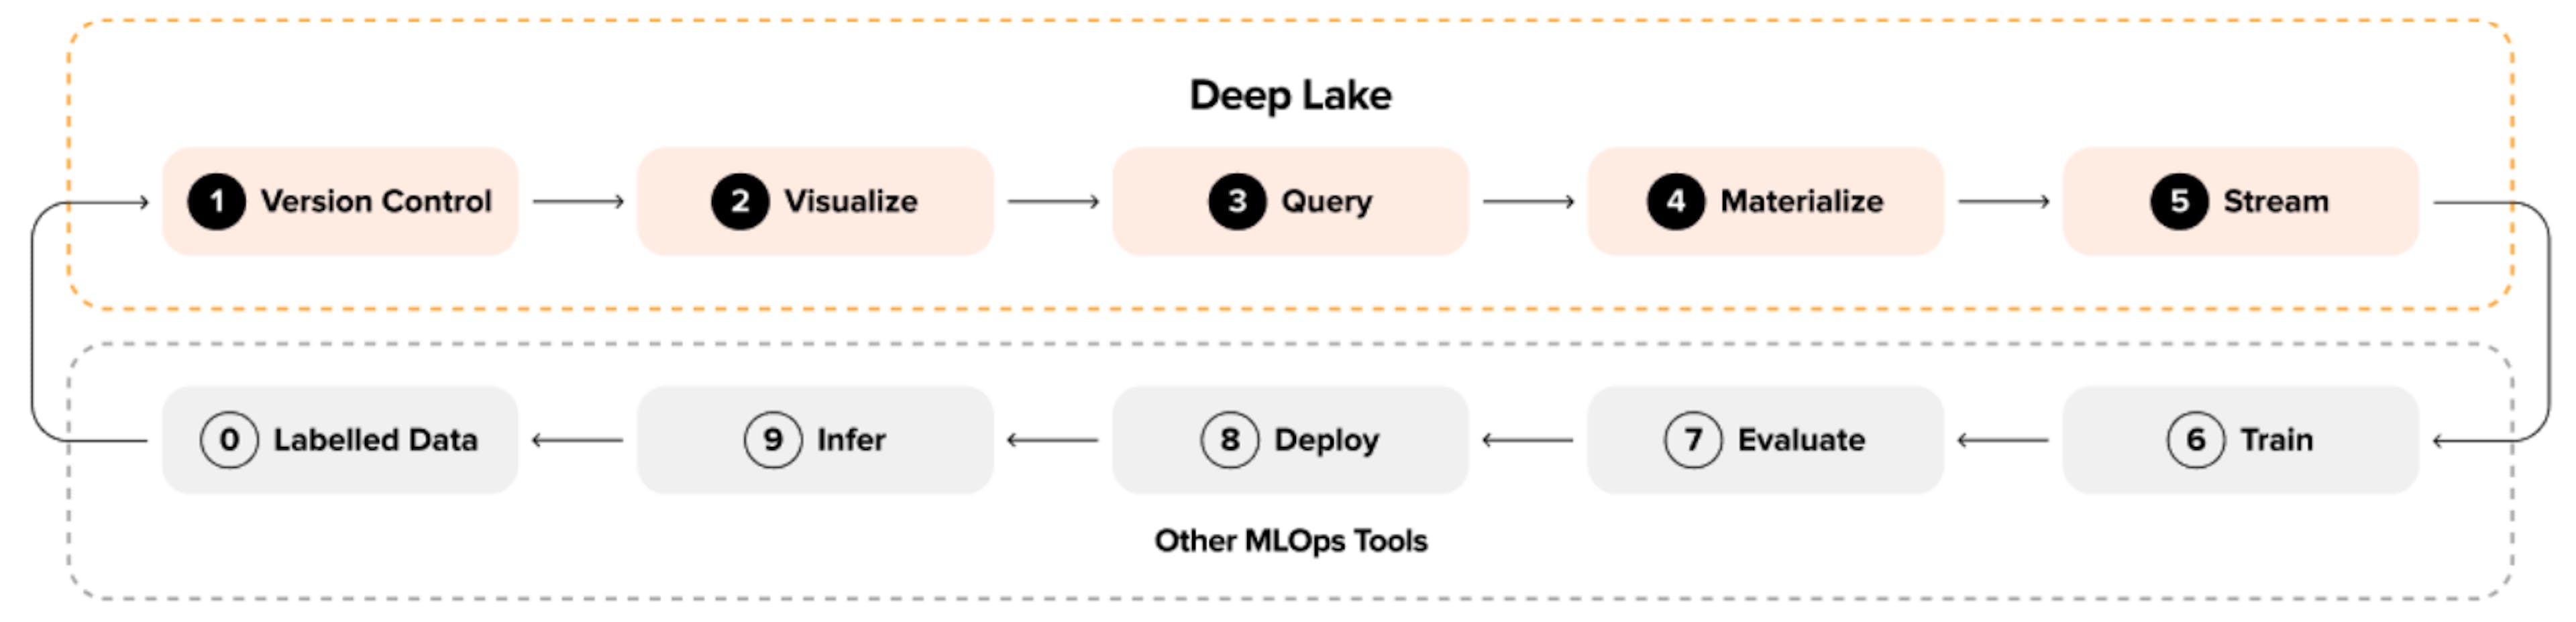 Figura 2: Loop de aprendizado de máquina com Deep Lake